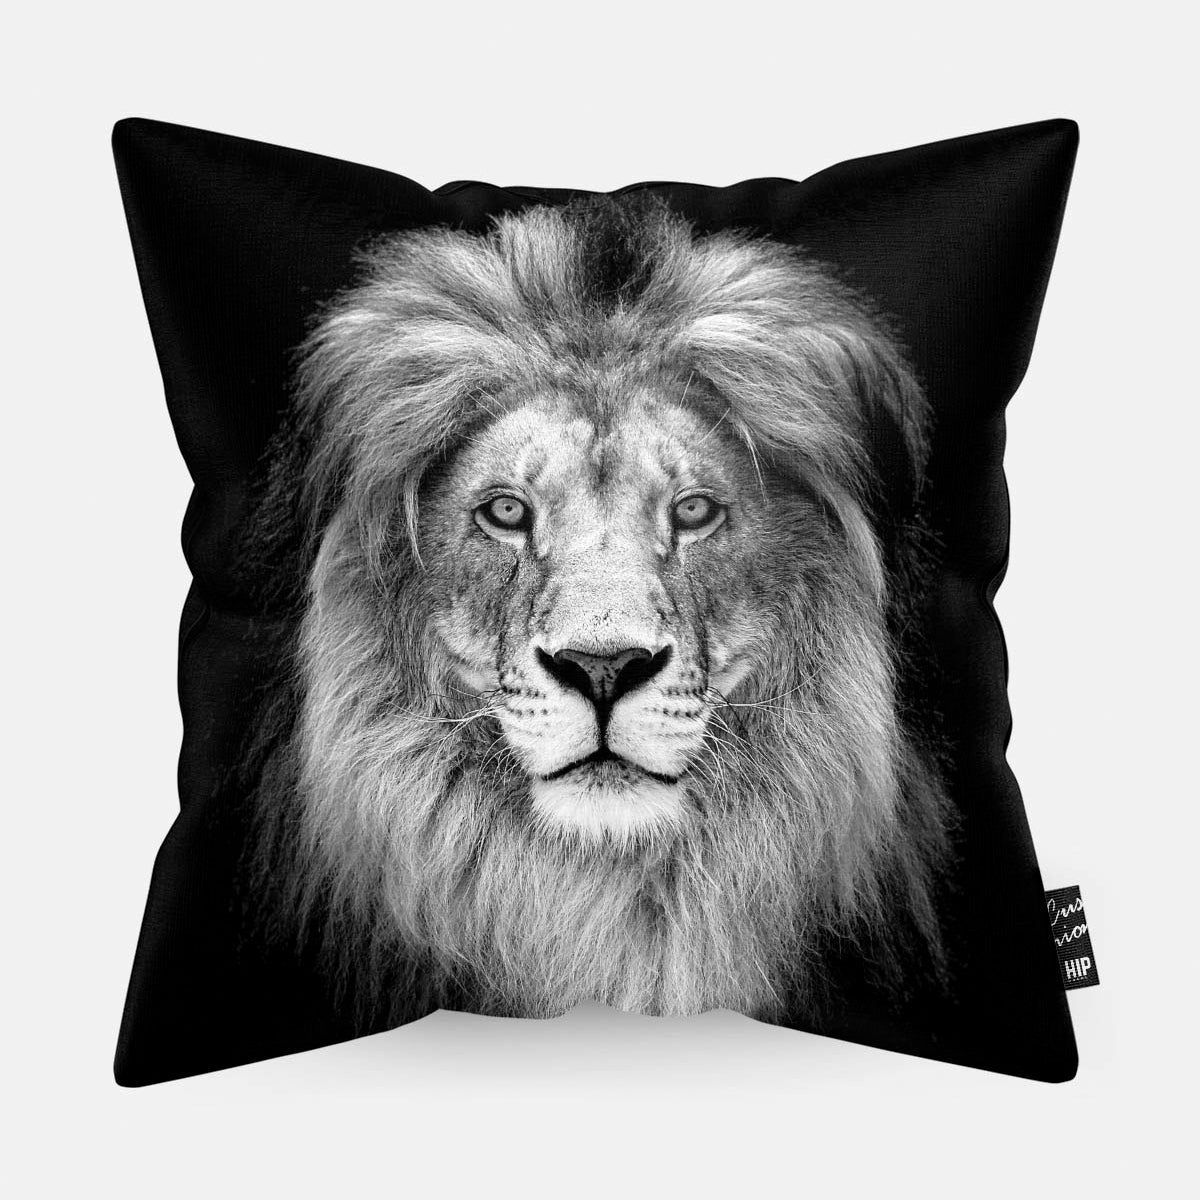 Kussen met een leeuw in zwart-wit erop afgebeeld.